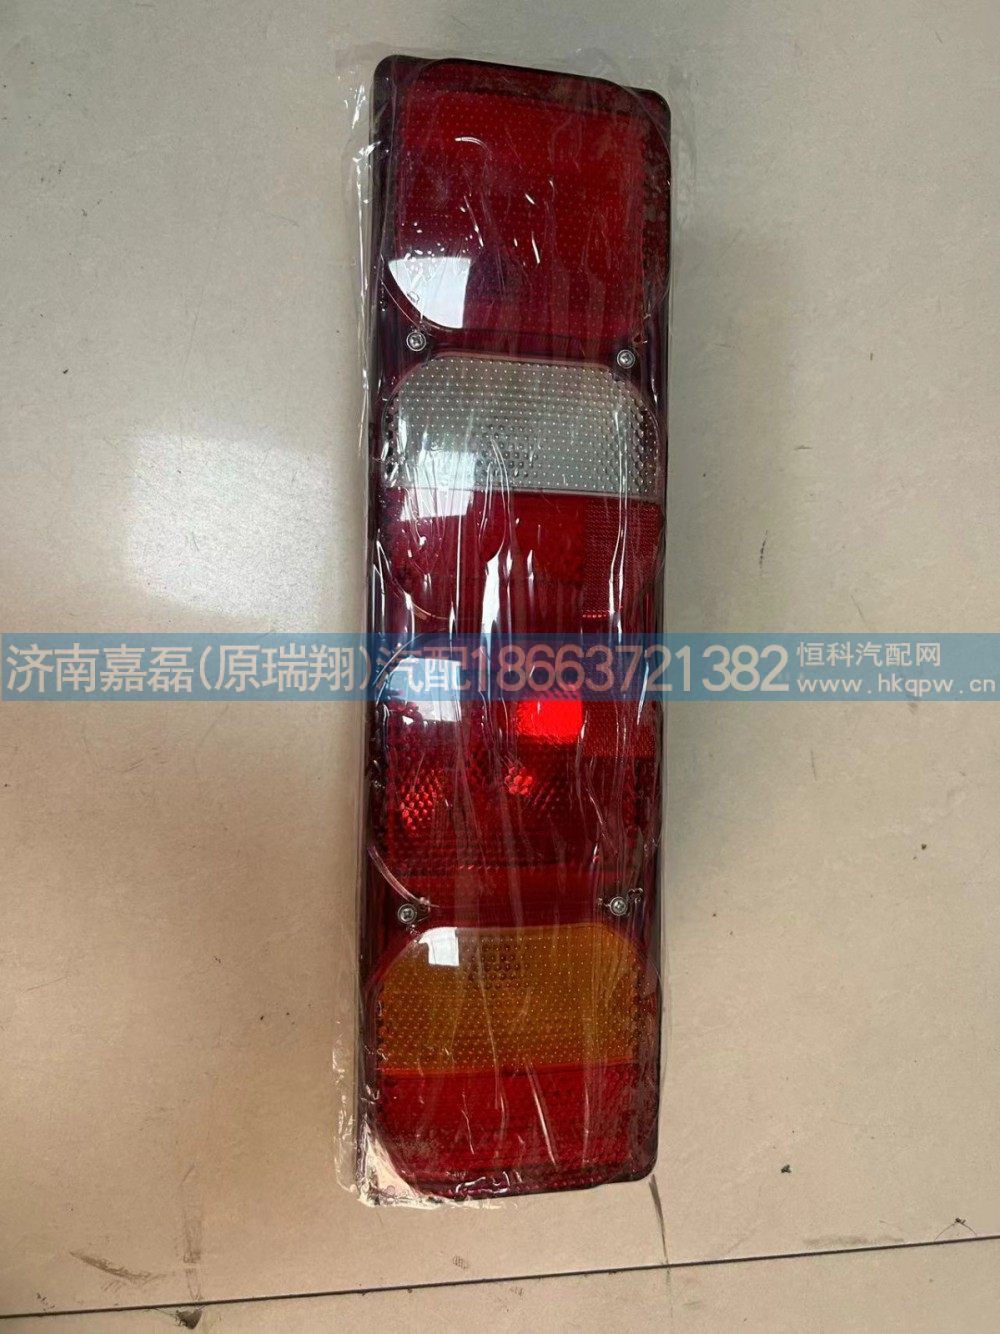 WG9925810001,带侧标志灯7功能组合后灯（左）,济南嘉磊汽车配件有限公司(原济南瑞翔)